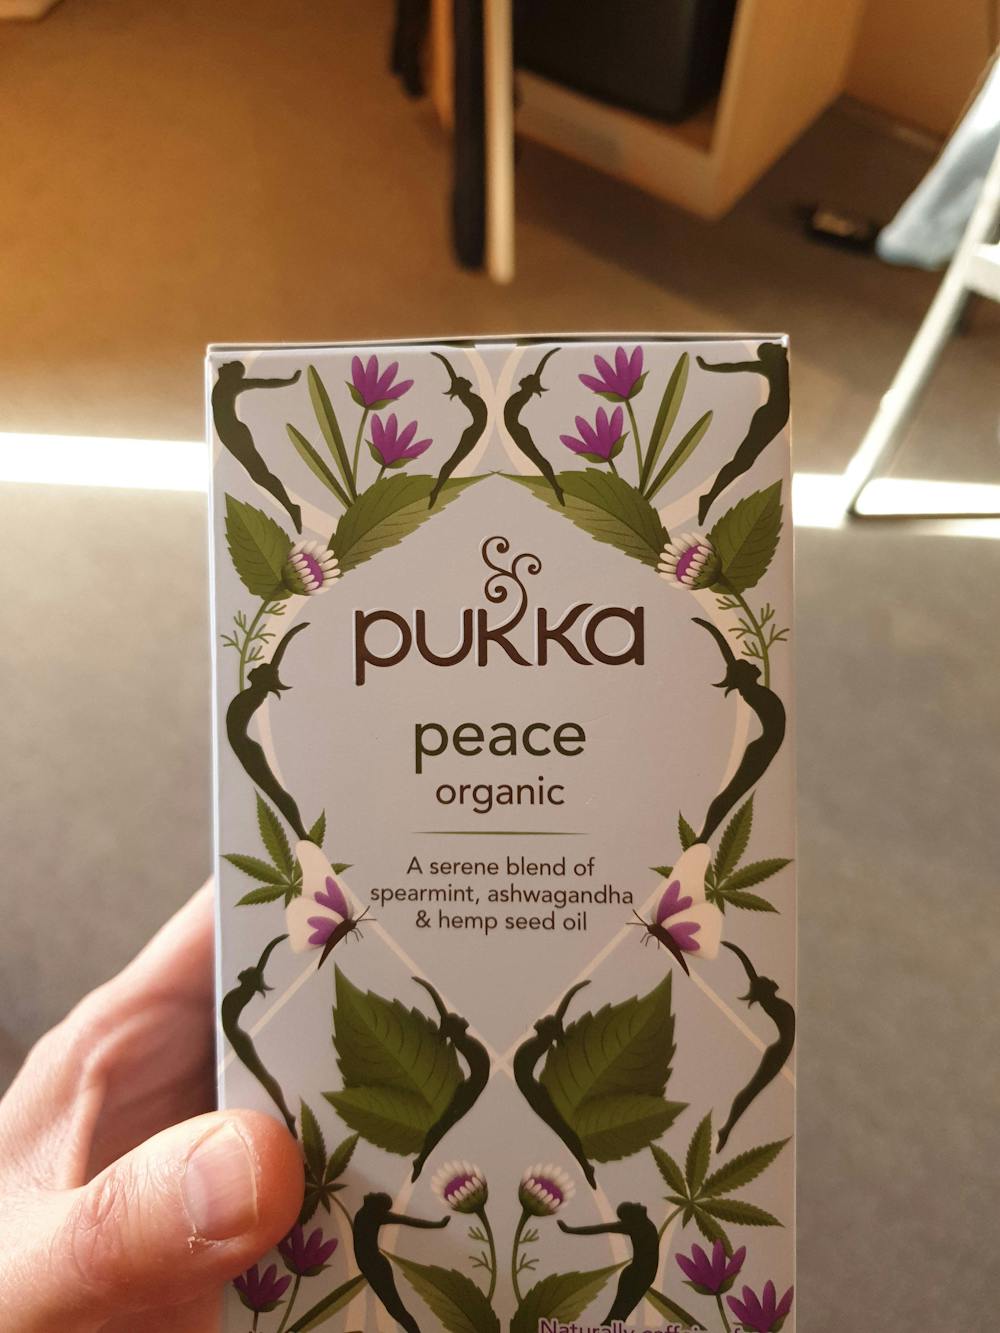 Te peace organic, Pukka 